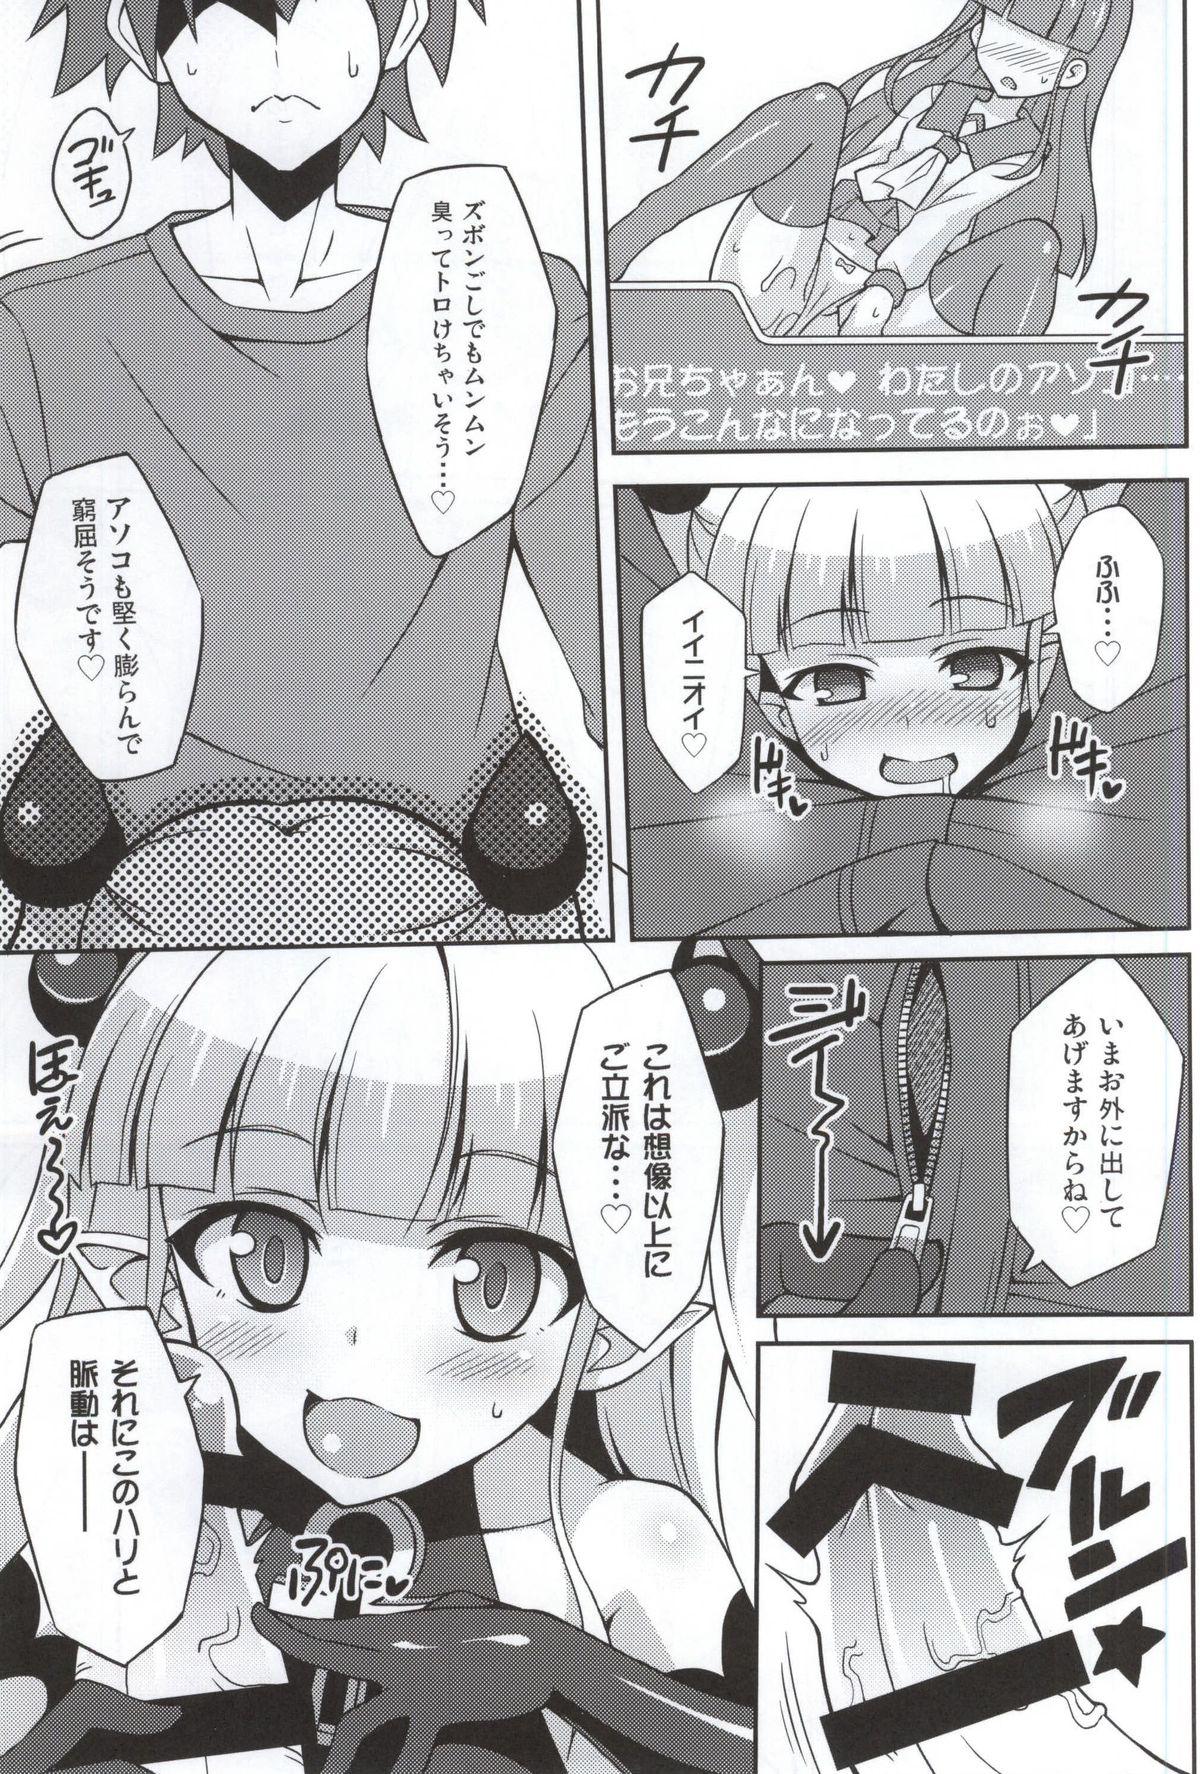 4some Shinmai Inma no Shasei Kanri - Shinmai maou no testament Jeans - Page 4